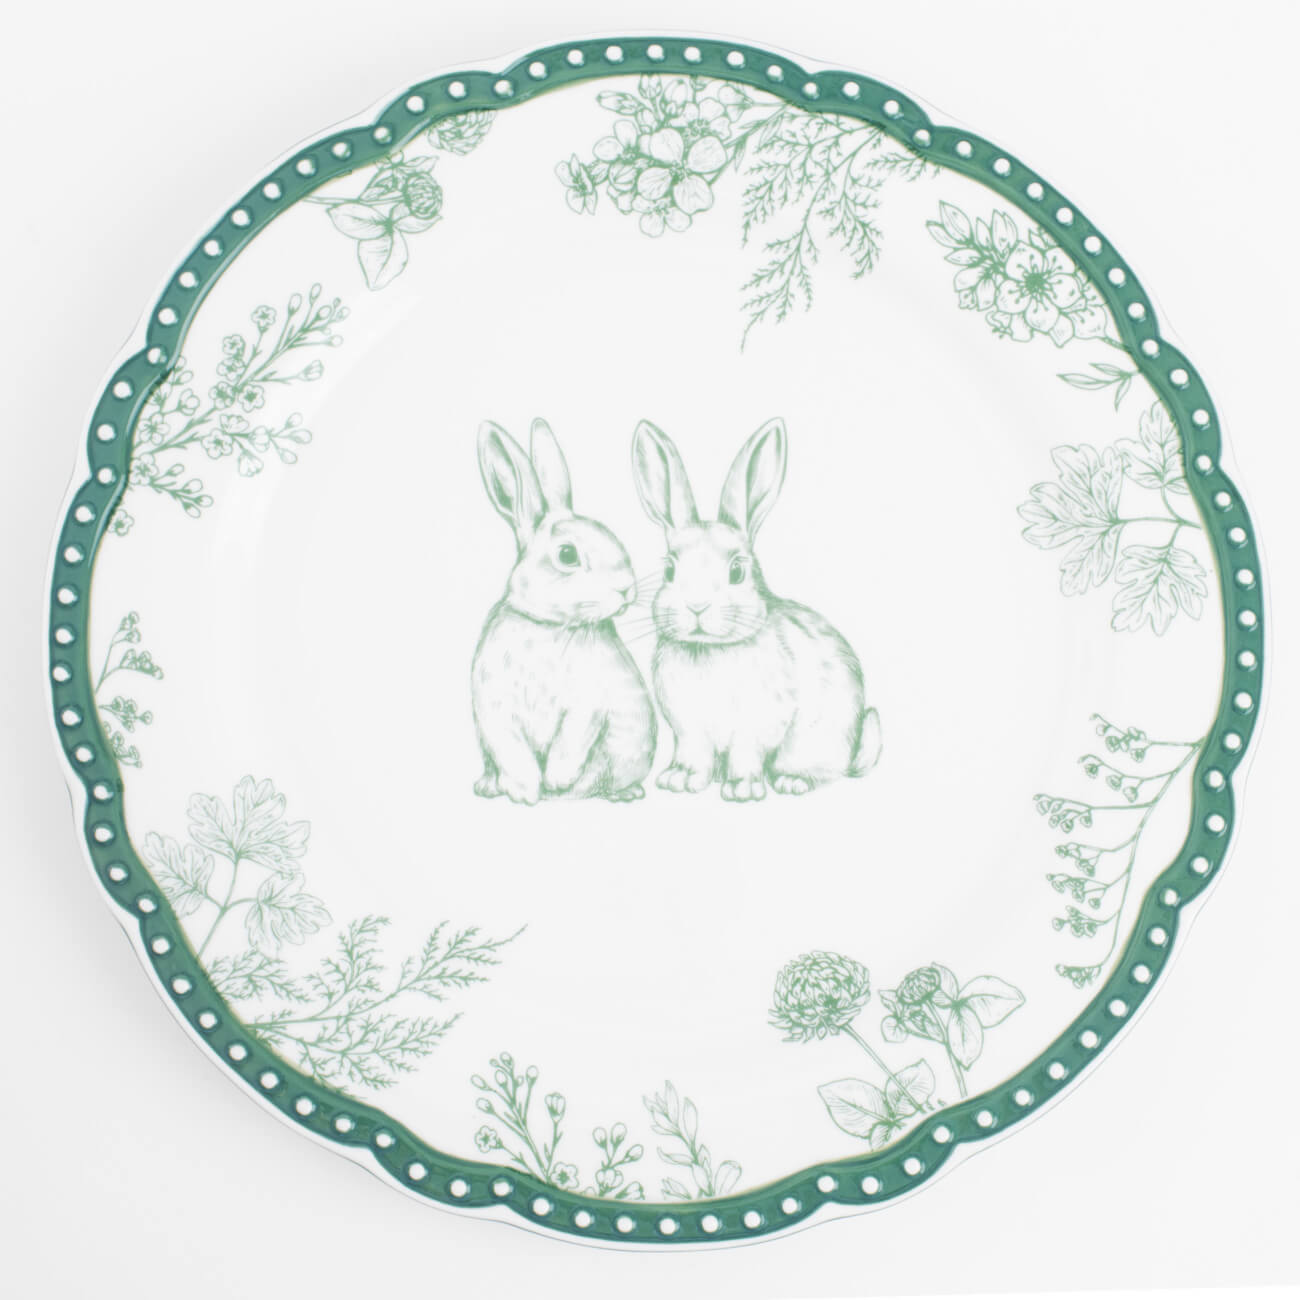 Тарелка обеденная, 27 см, керамика, бело-зеленая, Кролики и цветы, Easter blooming летающая тарелка d 23 см зеленая